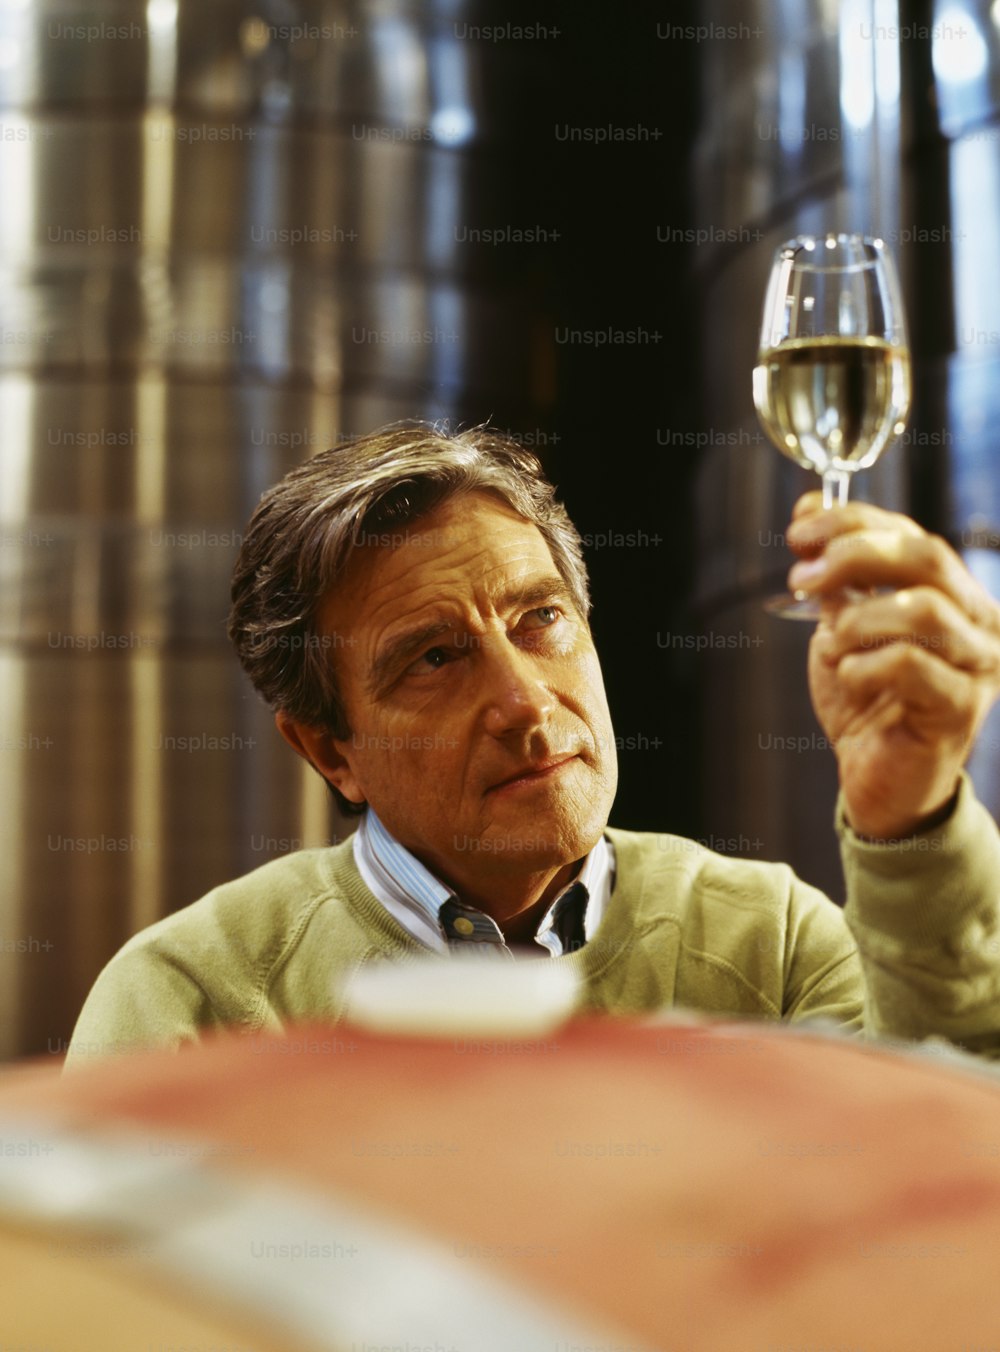 Ein Mann, der ein Glas Wein in der Hand hält